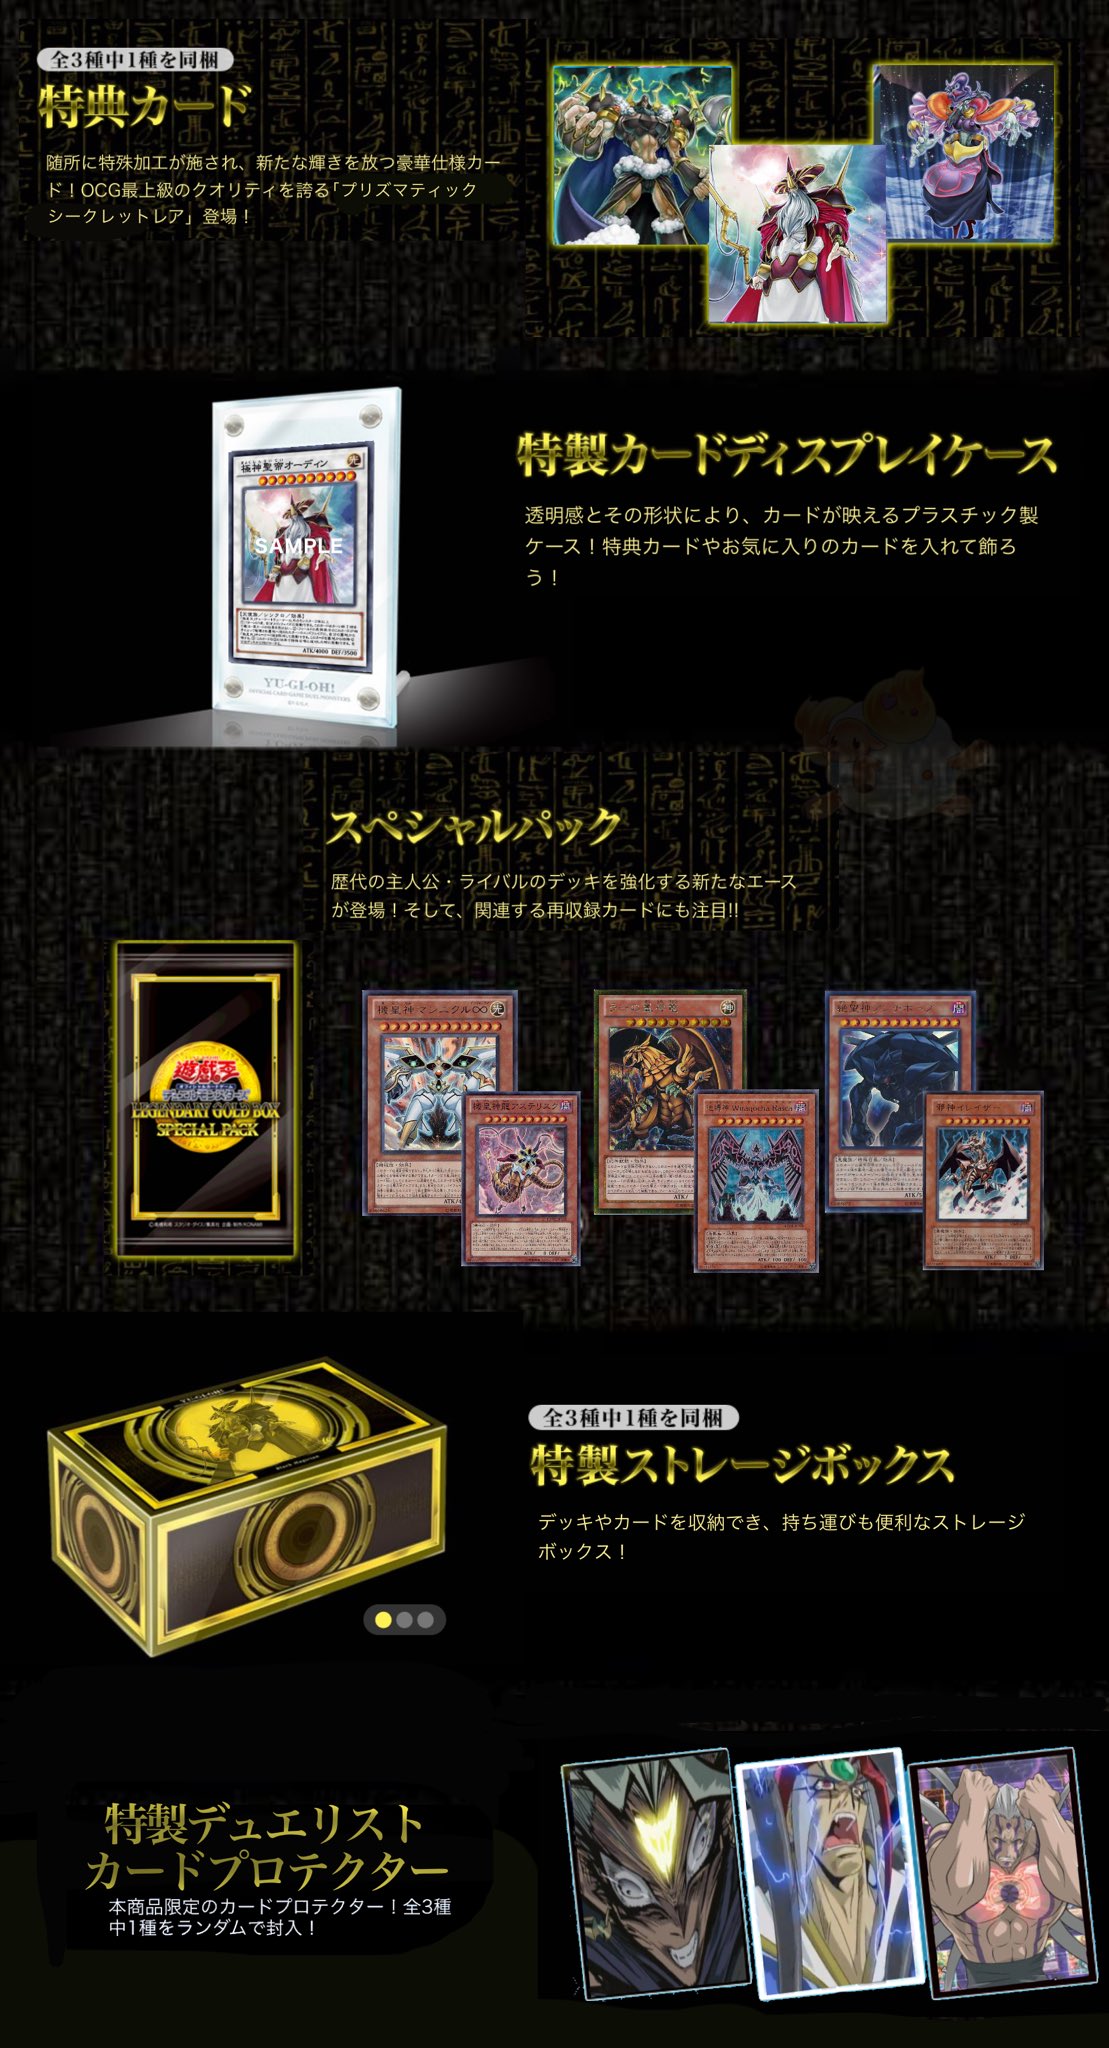 【2022 新作】  プリズマティックゴッドボックス　3ボックス 遊戯王 遊戯王